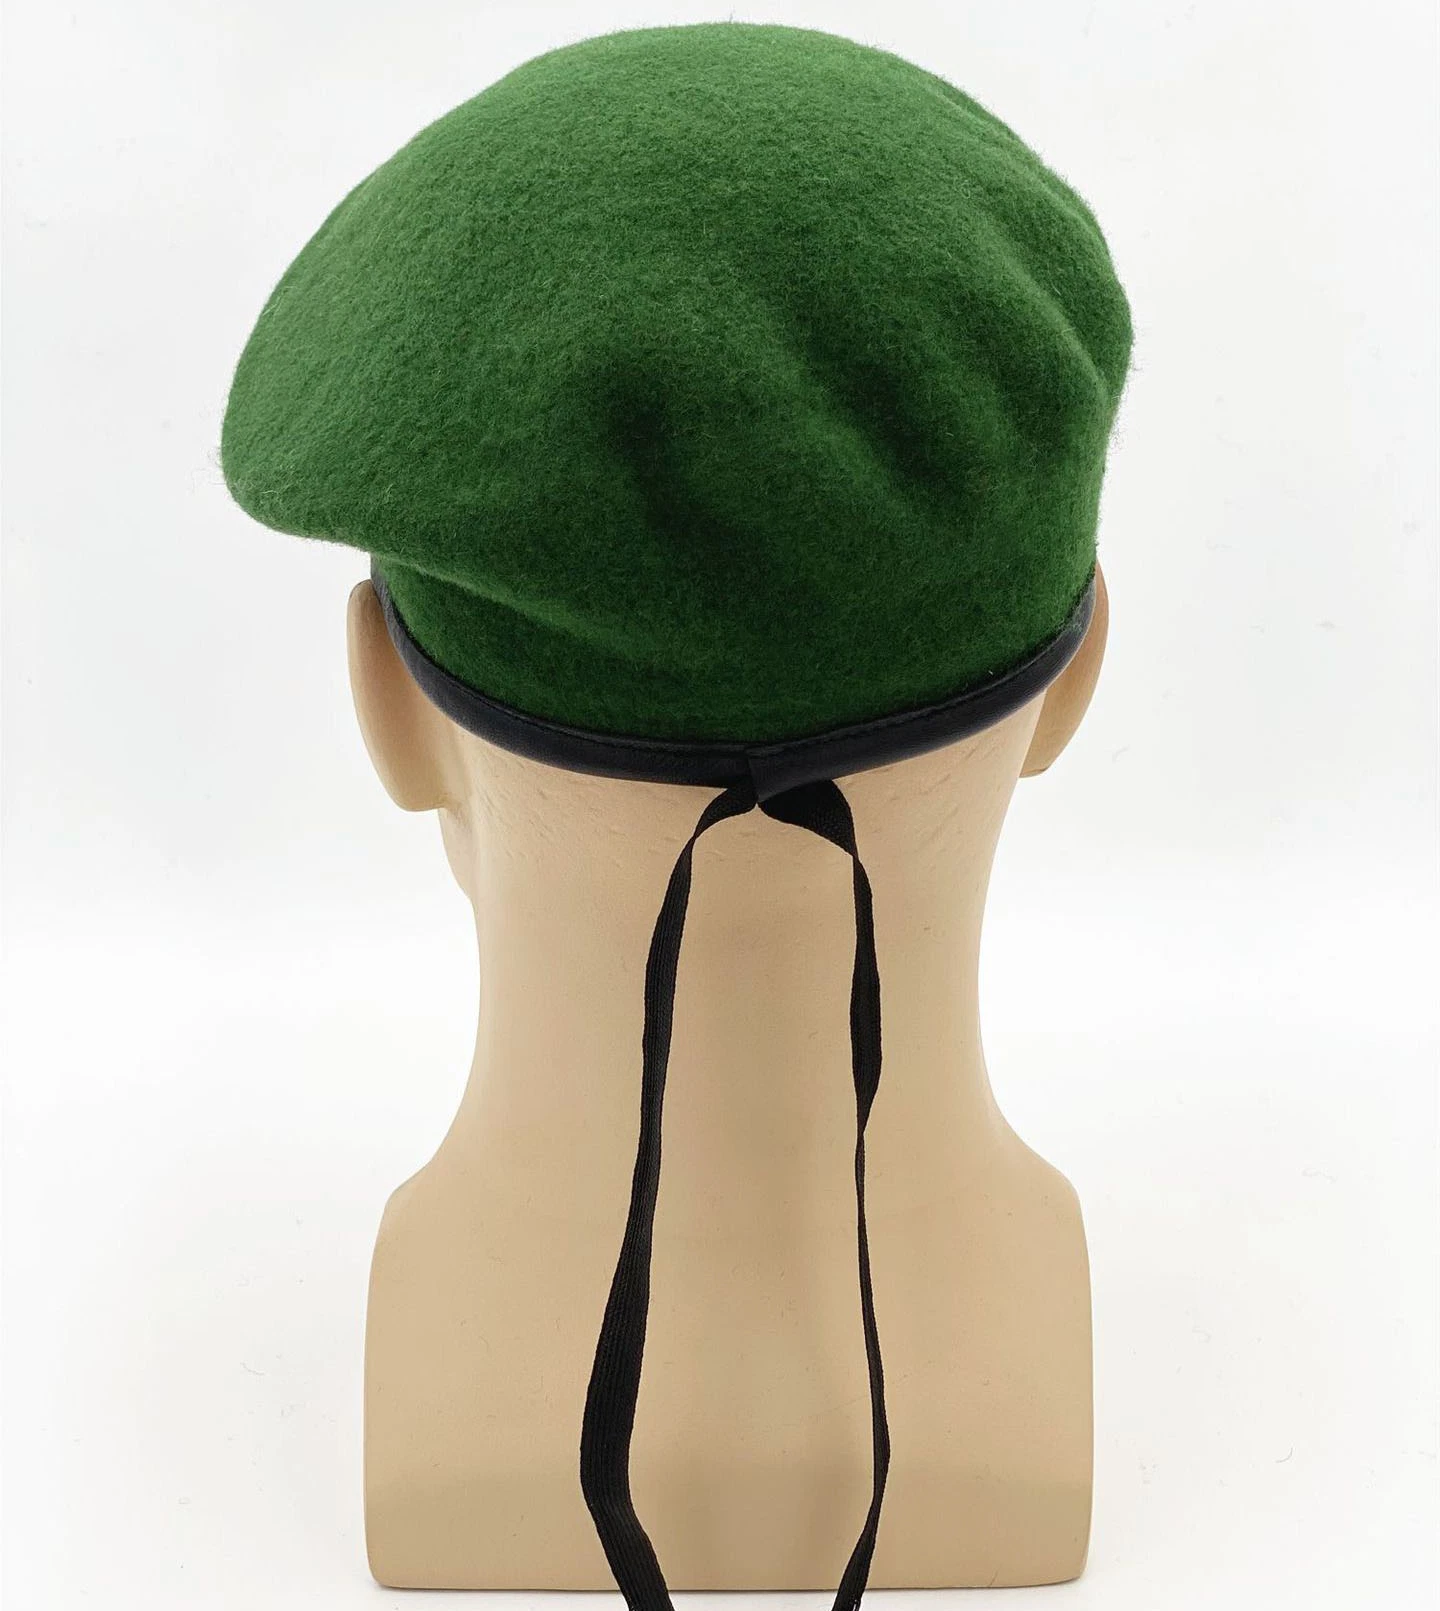 Lana personalizados de estilo militar Beret, Suave Beret Cap Hat